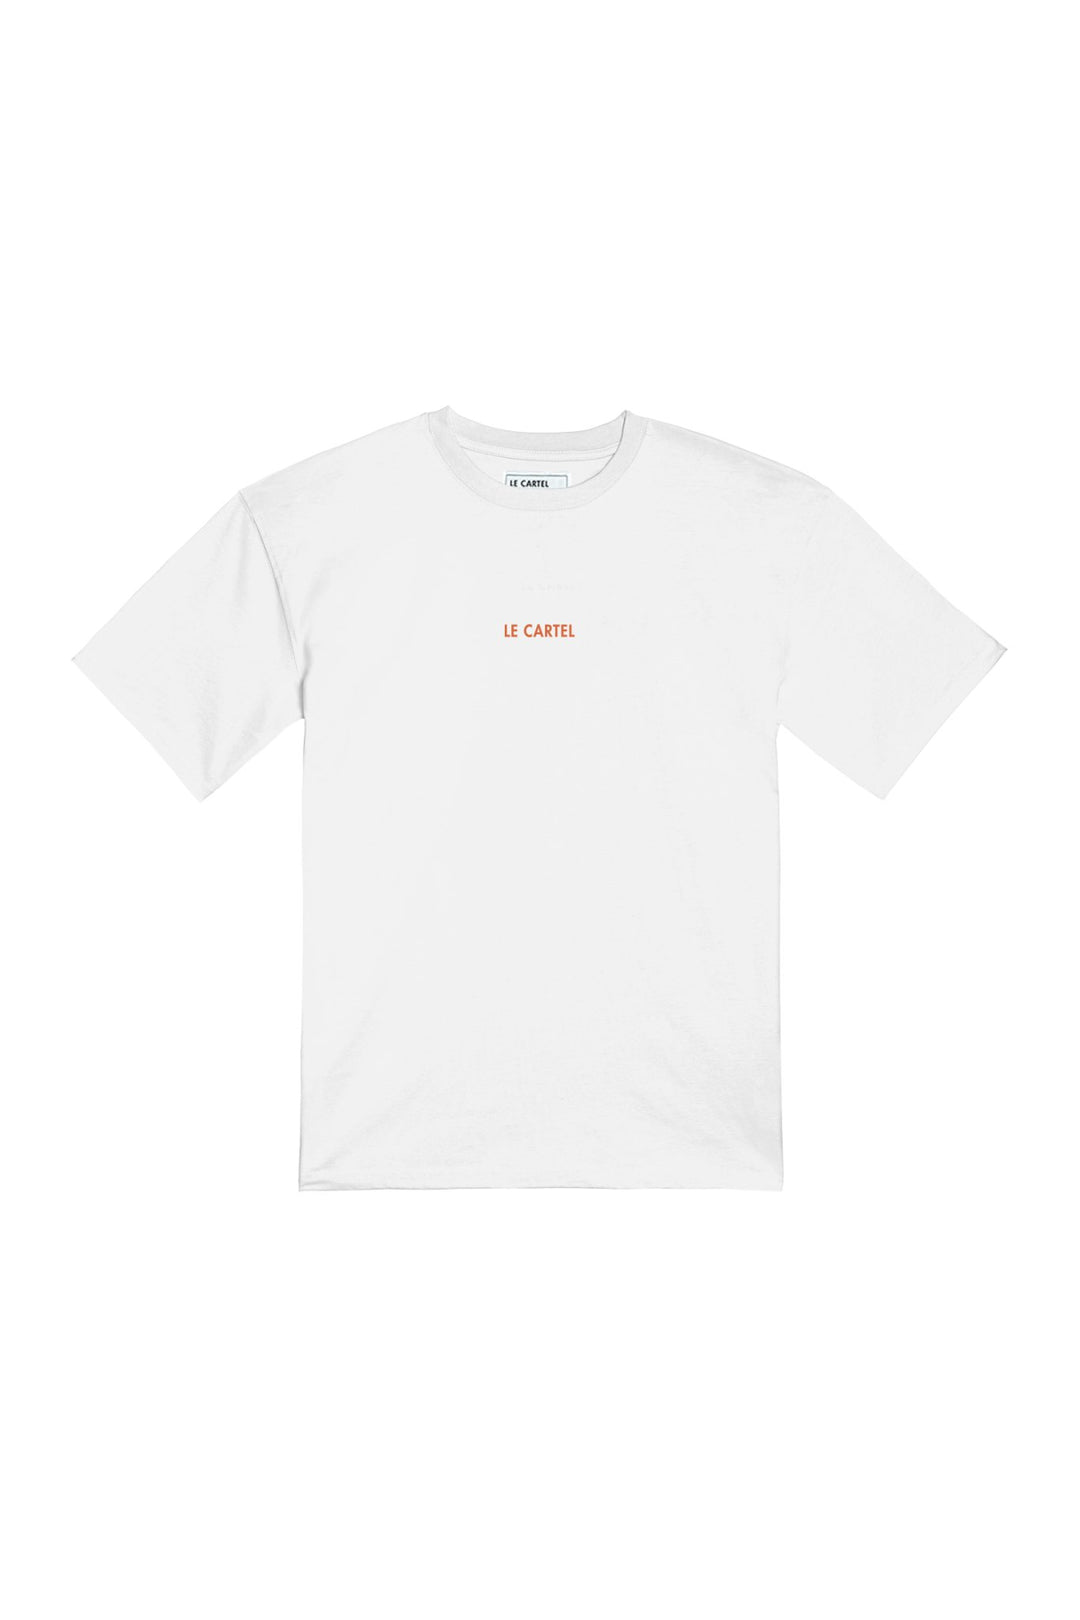 JOUR DE FÊTE・T-shirt unisexe・Blanc - Le Cartel